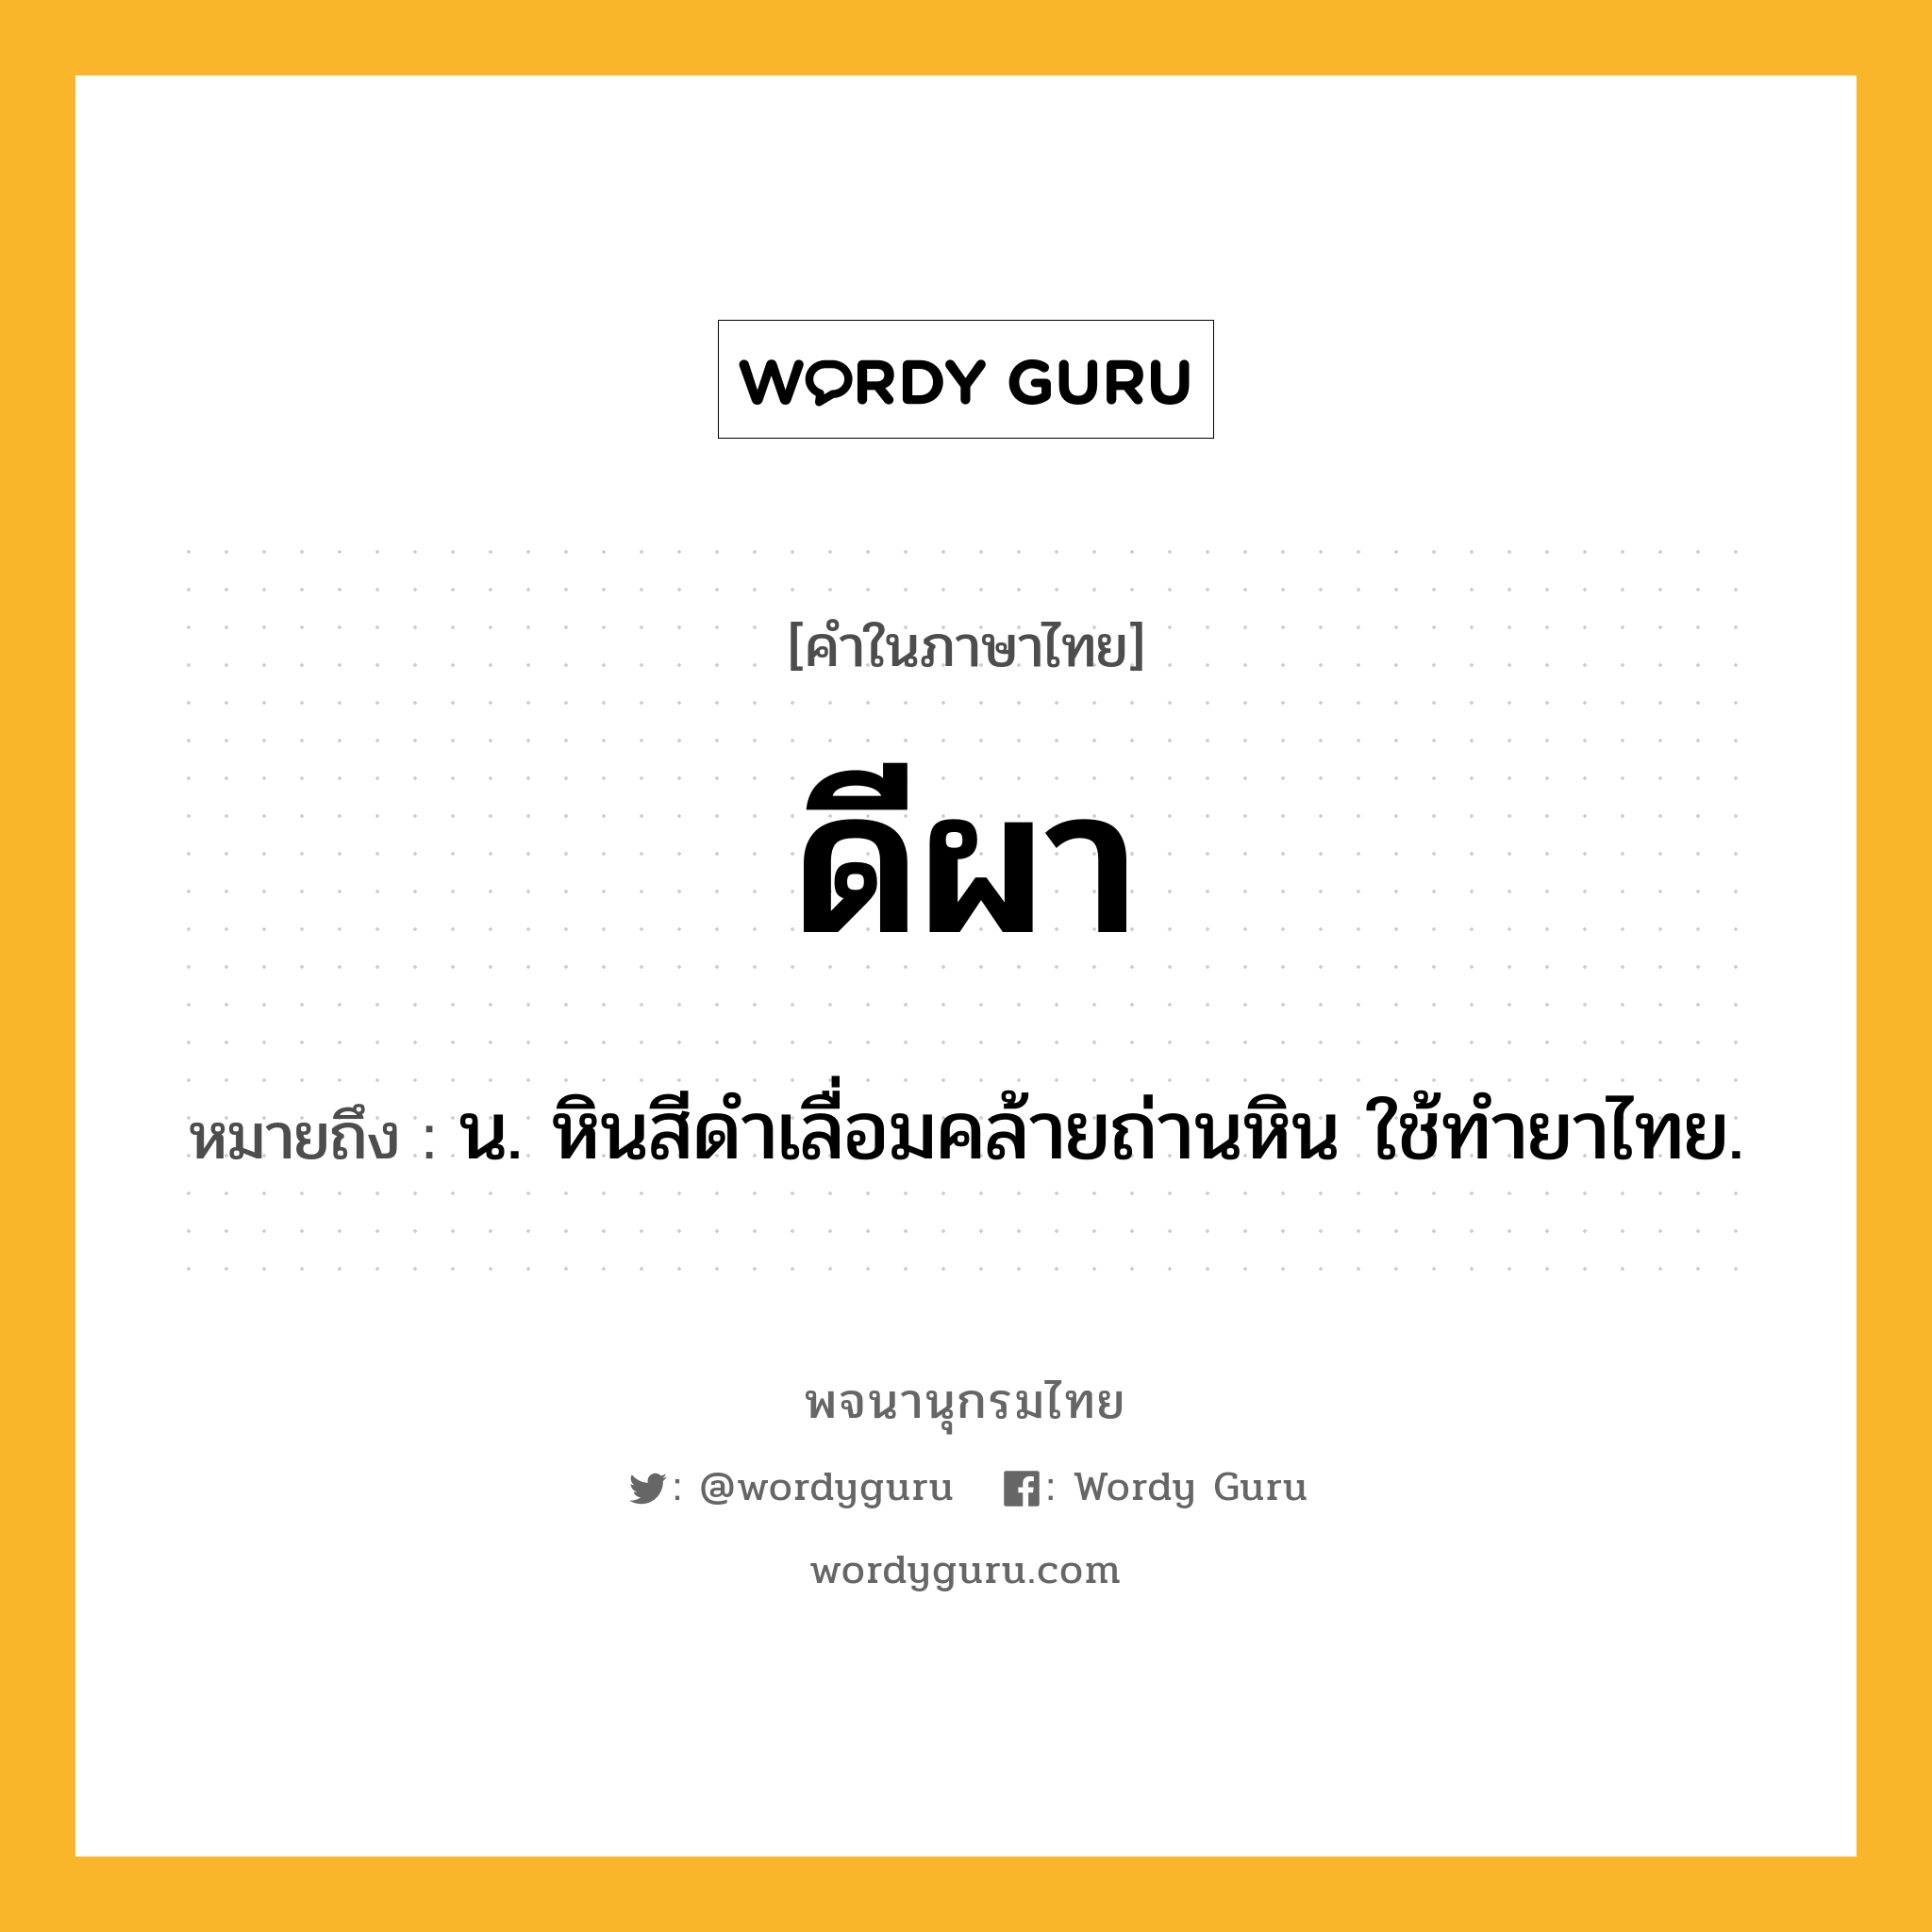 ดีผา ความหมาย หมายถึงอะไร?, คำในภาษาไทย ดีผา หมายถึง น. หินสีดําเลื่อมคล้ายถ่านหิน ใช้ทํายาไทย.